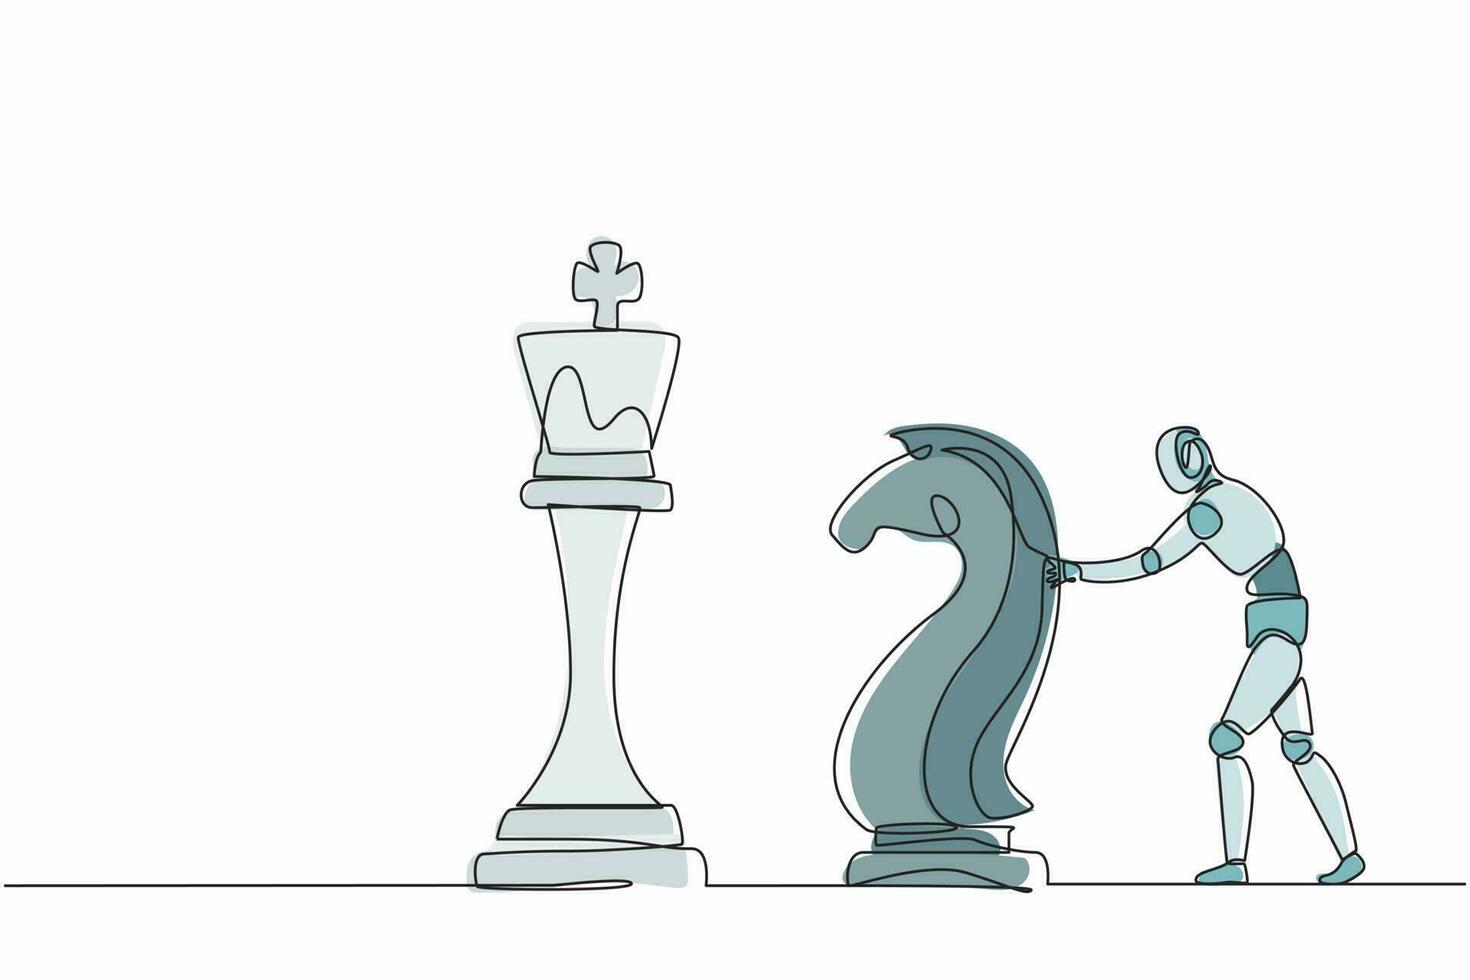 Los robots de dibujo de una línea continua empujan una enorme pieza de ajedrez de caballo caballero para derribar al rey. organismo cibernético robot humanoide. futuro concepto de desarrollo de robótica. gráfico vectorial de diseño de dibujo de una sola línea vector